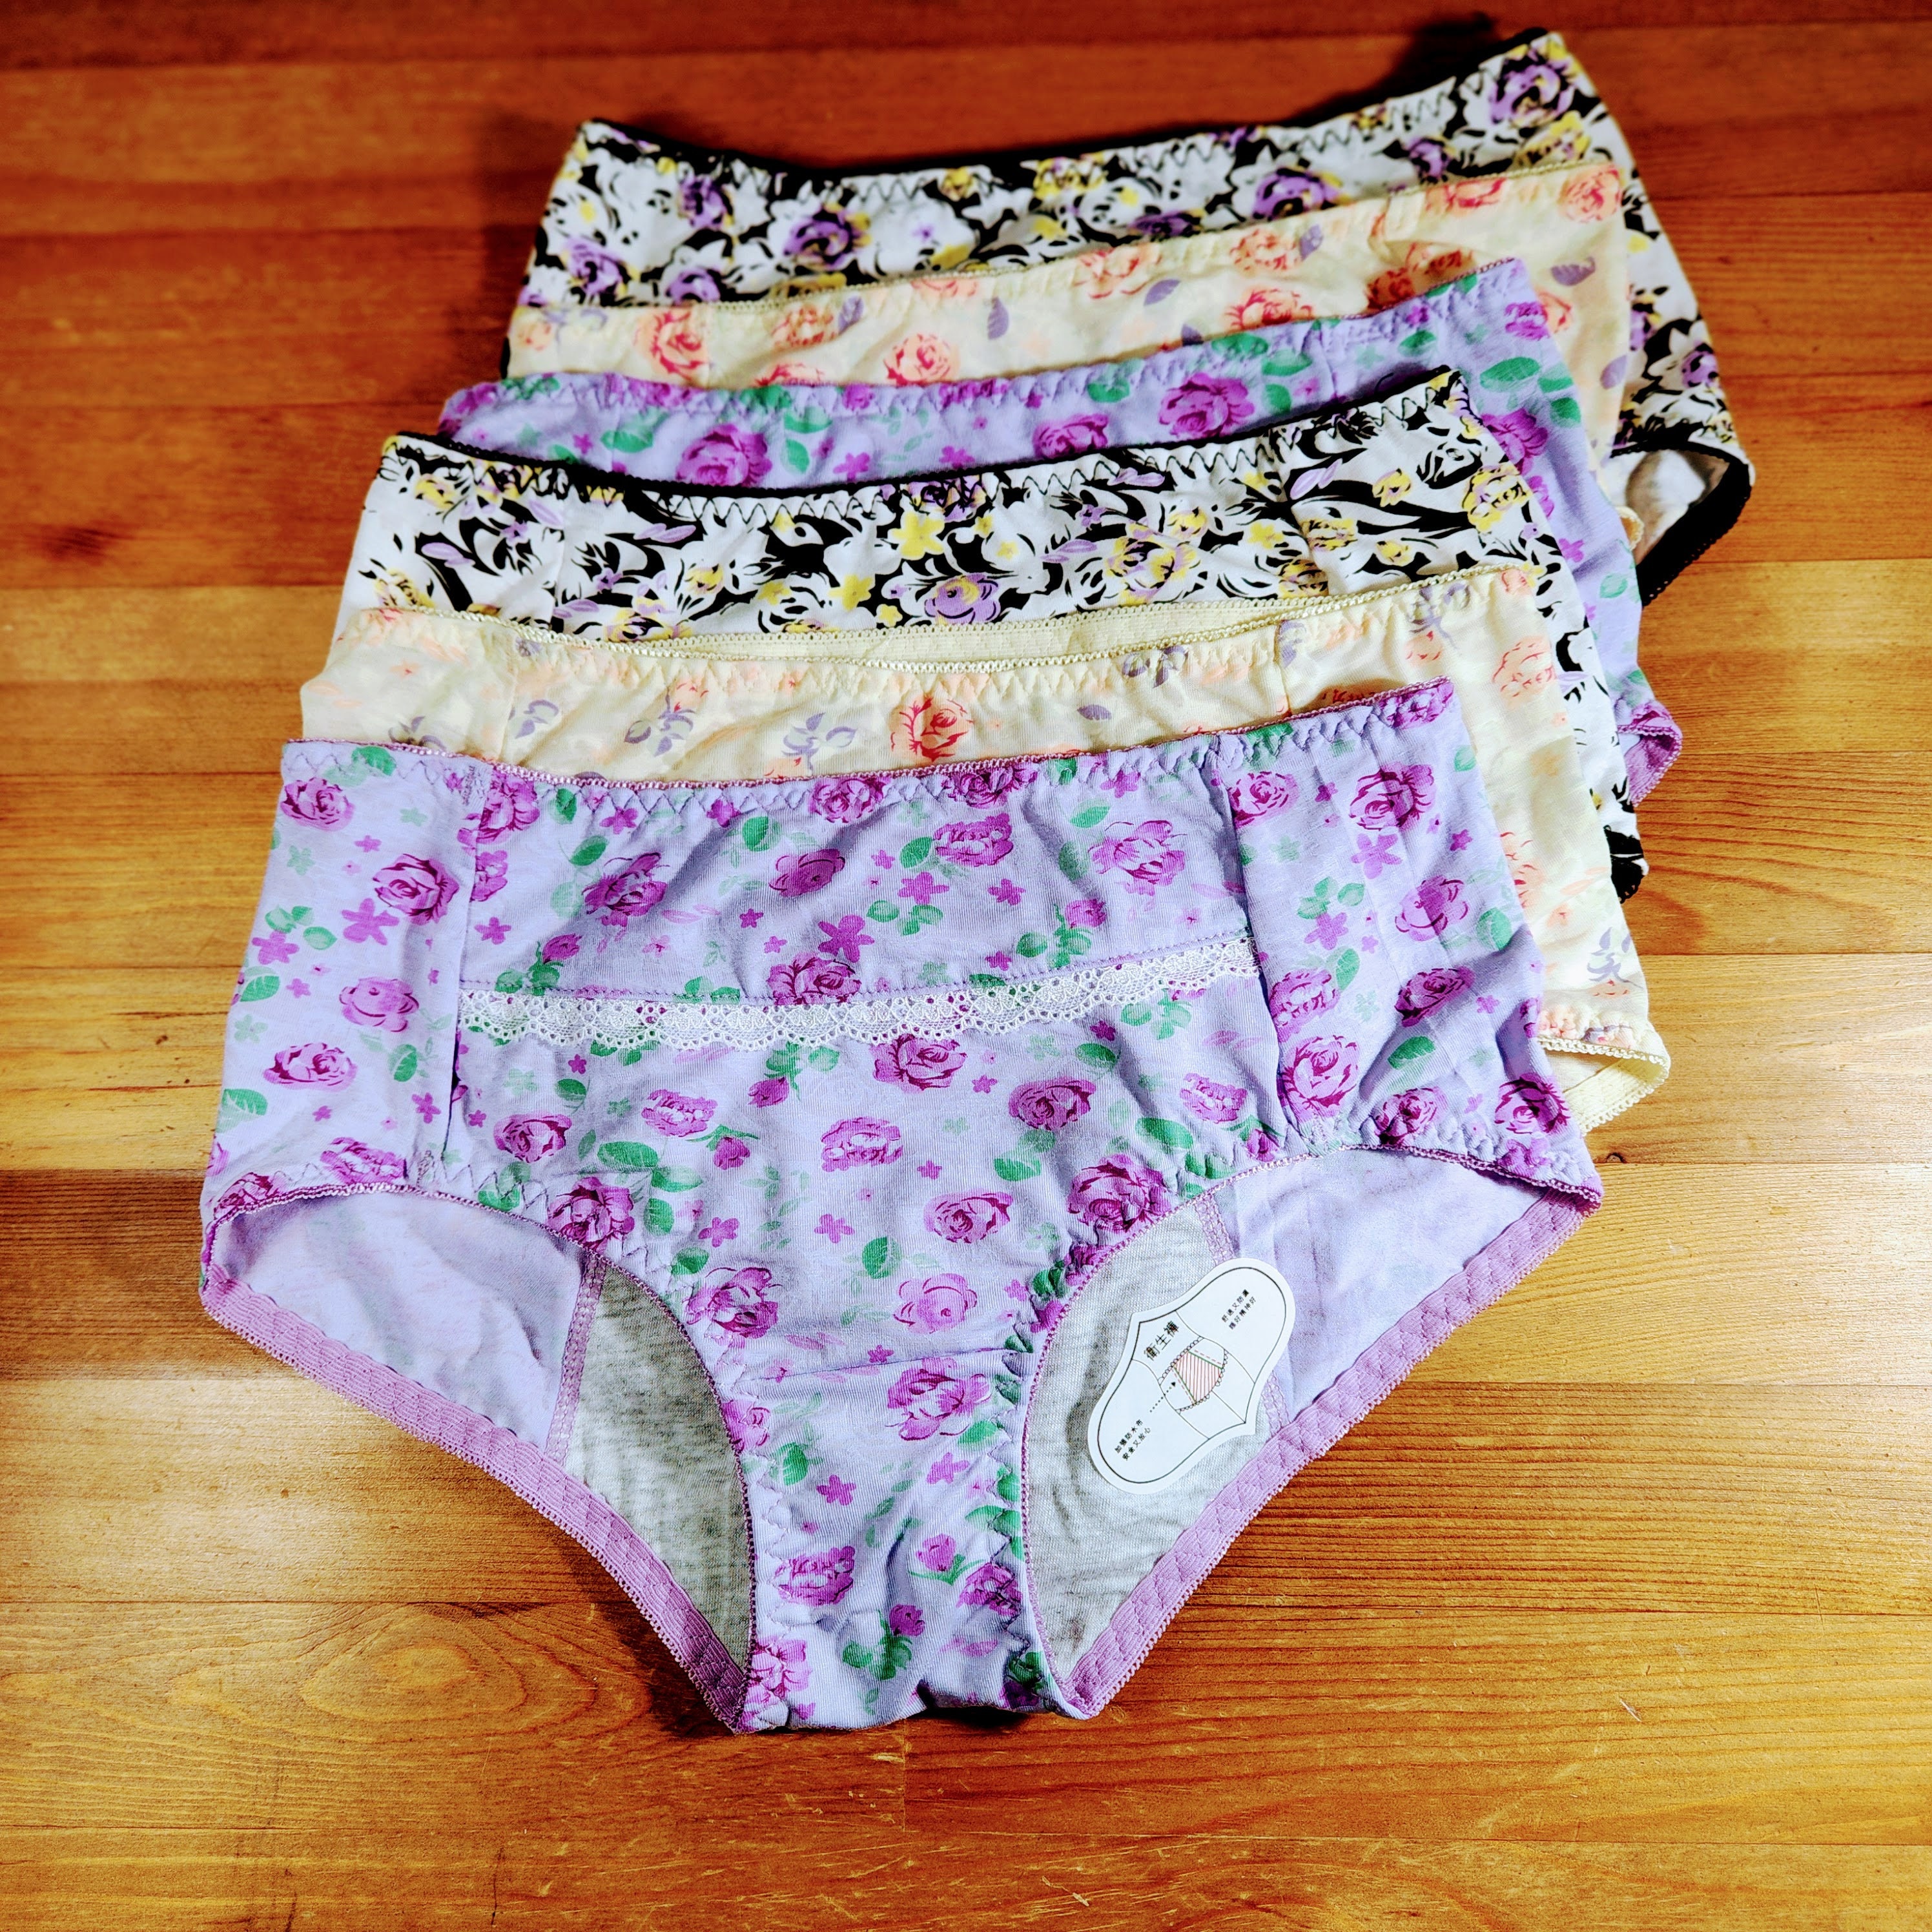 3 Pack Period Panties Leak Proof . menstrual Underwear 3 Layer